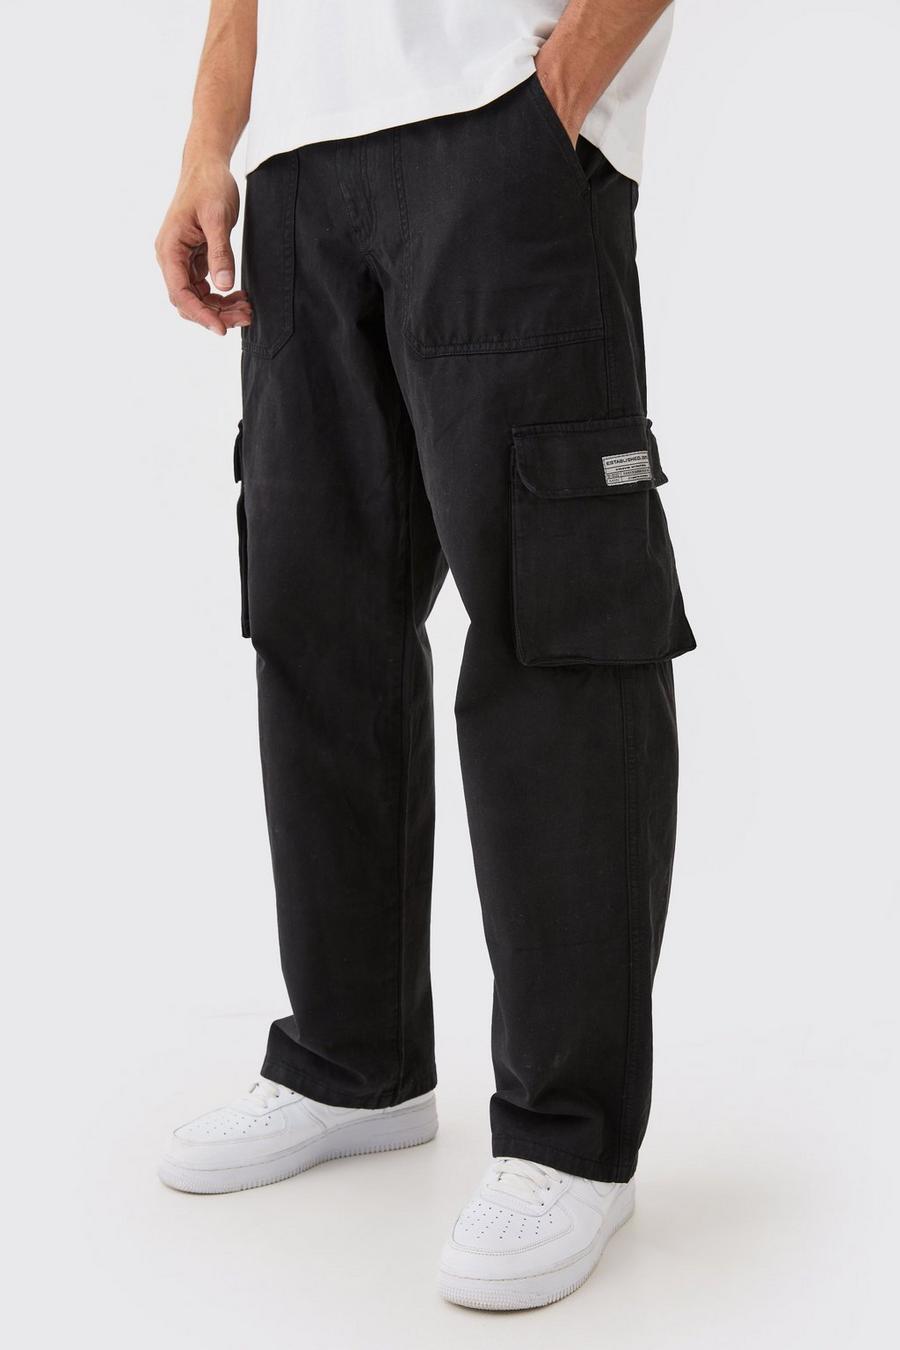 Pantalón cargo con cintura fija, cremallera y etiqueta de tela, Black image number 1